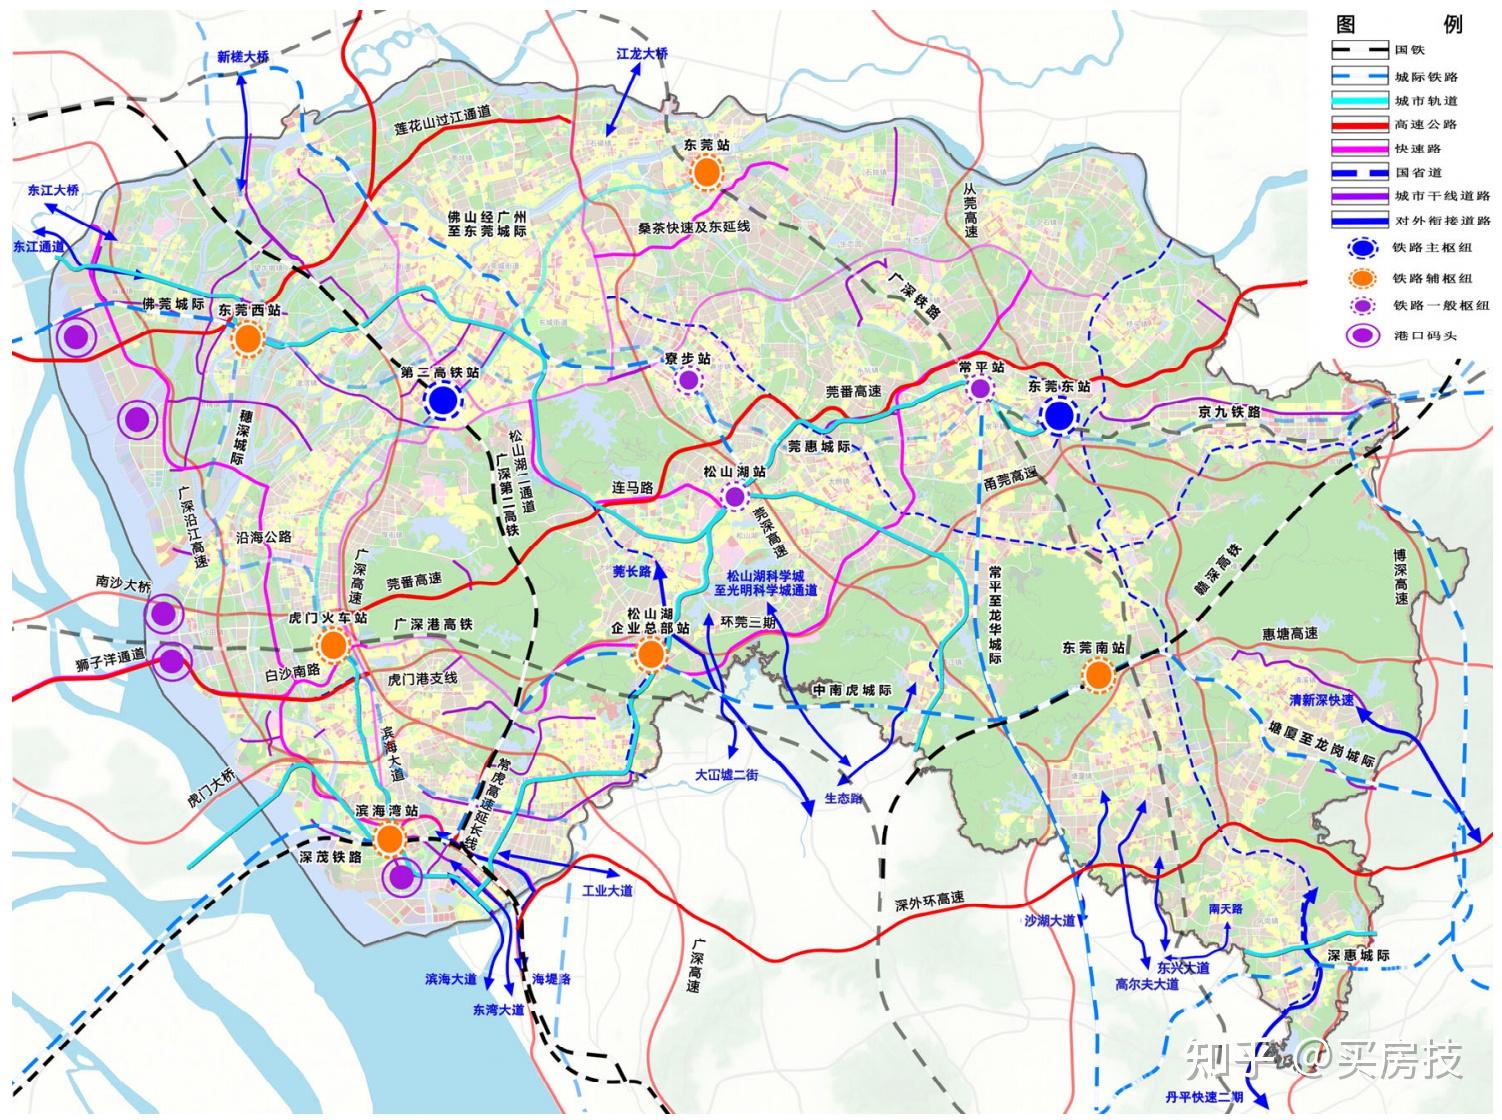 城际轨道,还有公路,我们看一下十四五规划中的东莞综合交通规划布局图